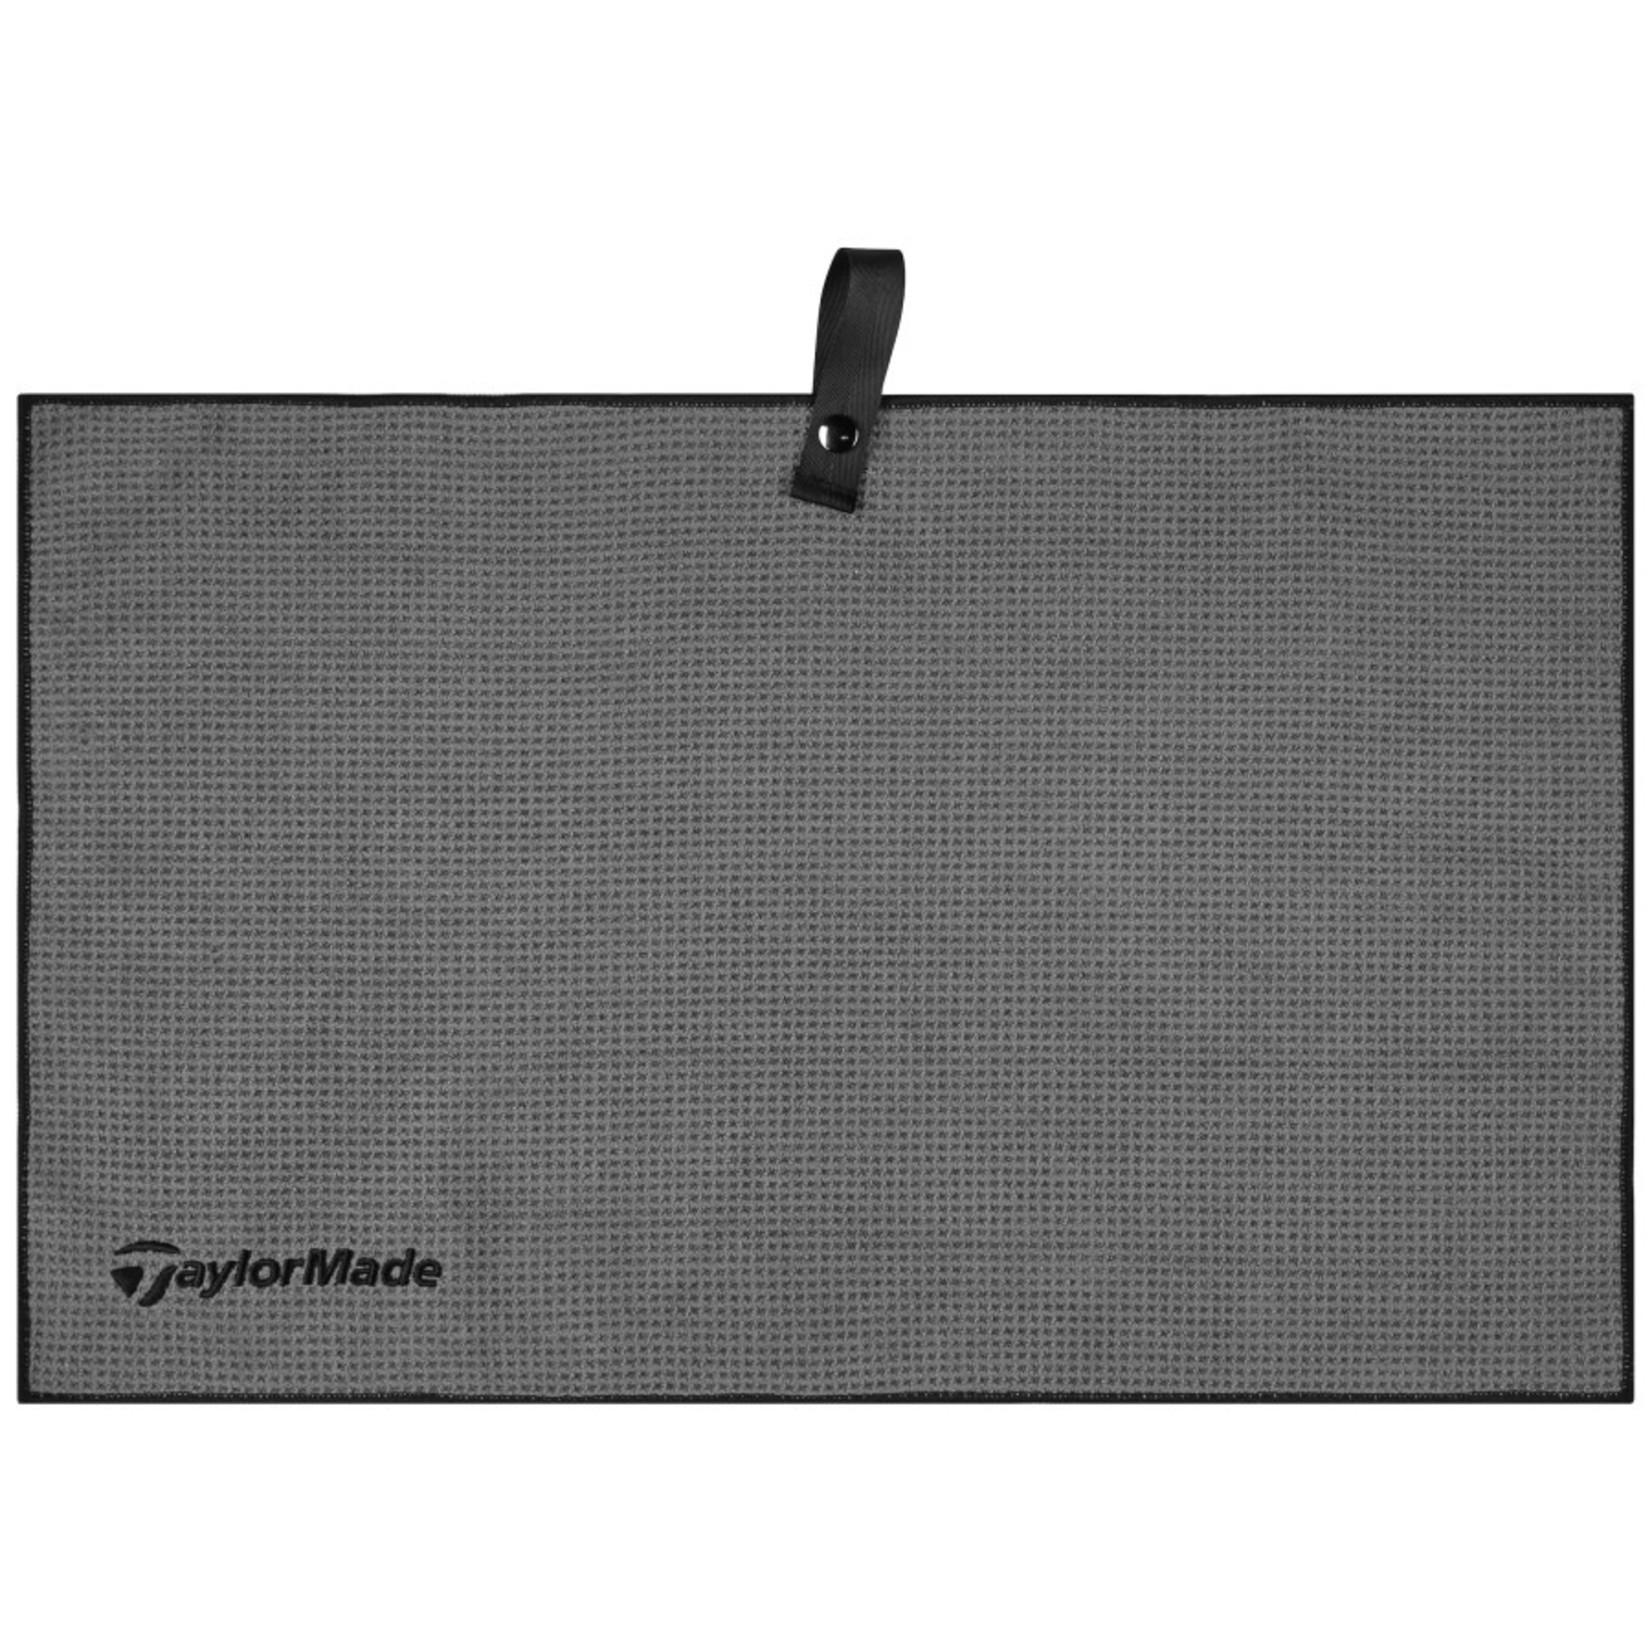 TAYLORMADE Taylormade Microfiber Cart Towel